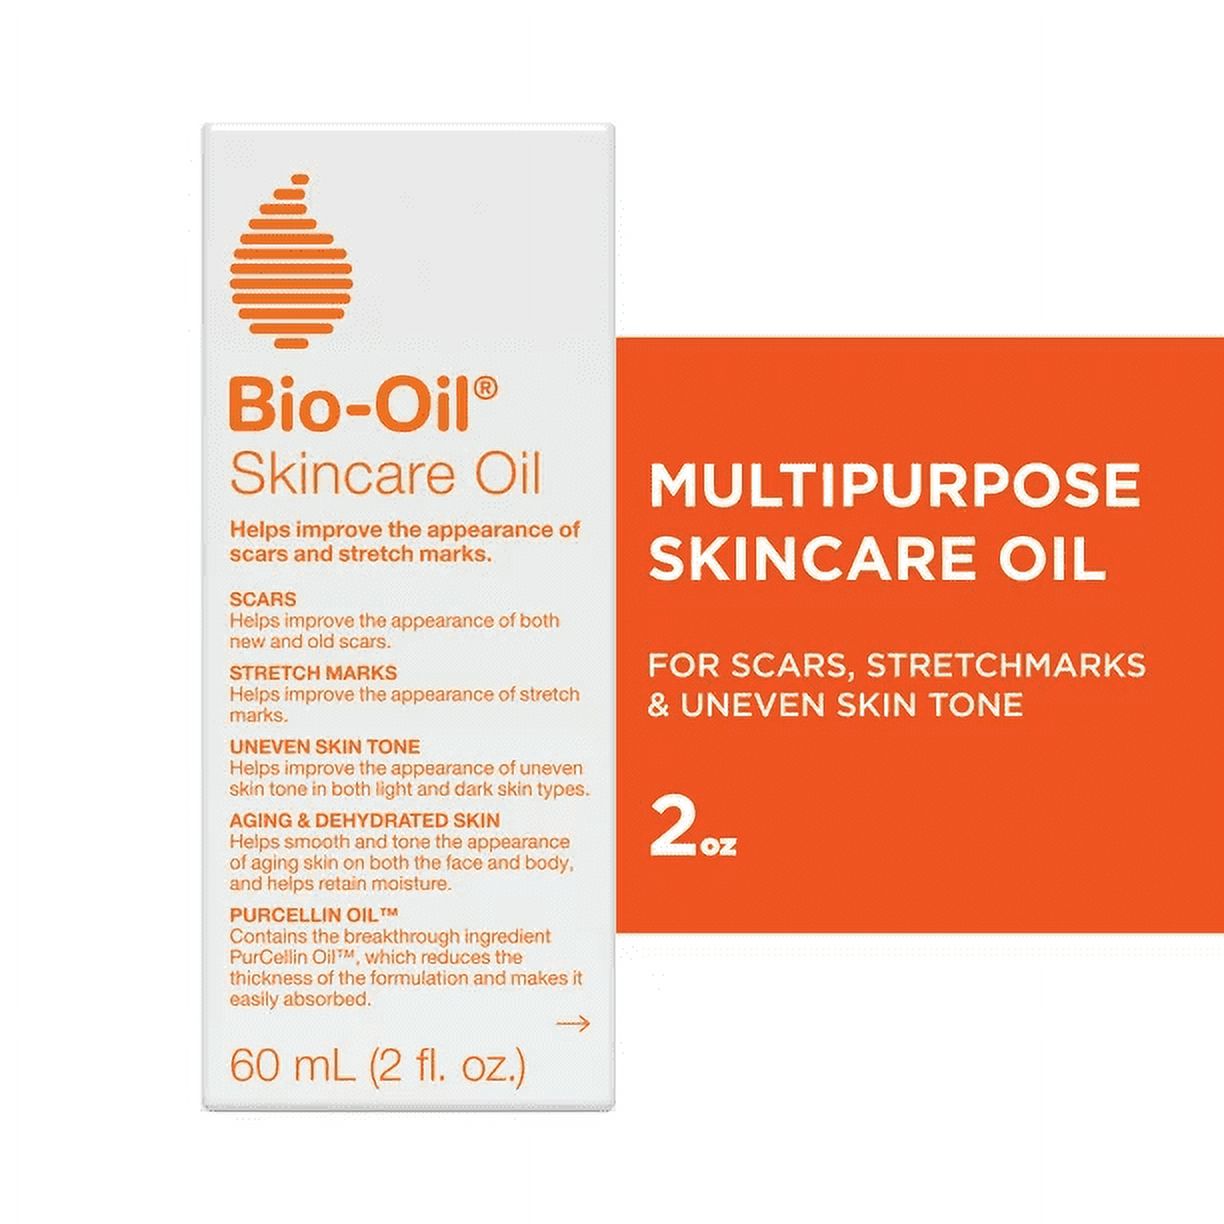 Bio-Oil Skincare Oil, Body Oil & Dark Spot Corrector for Scars and Stretchmarks, 2 fl oz - image 1 of 12